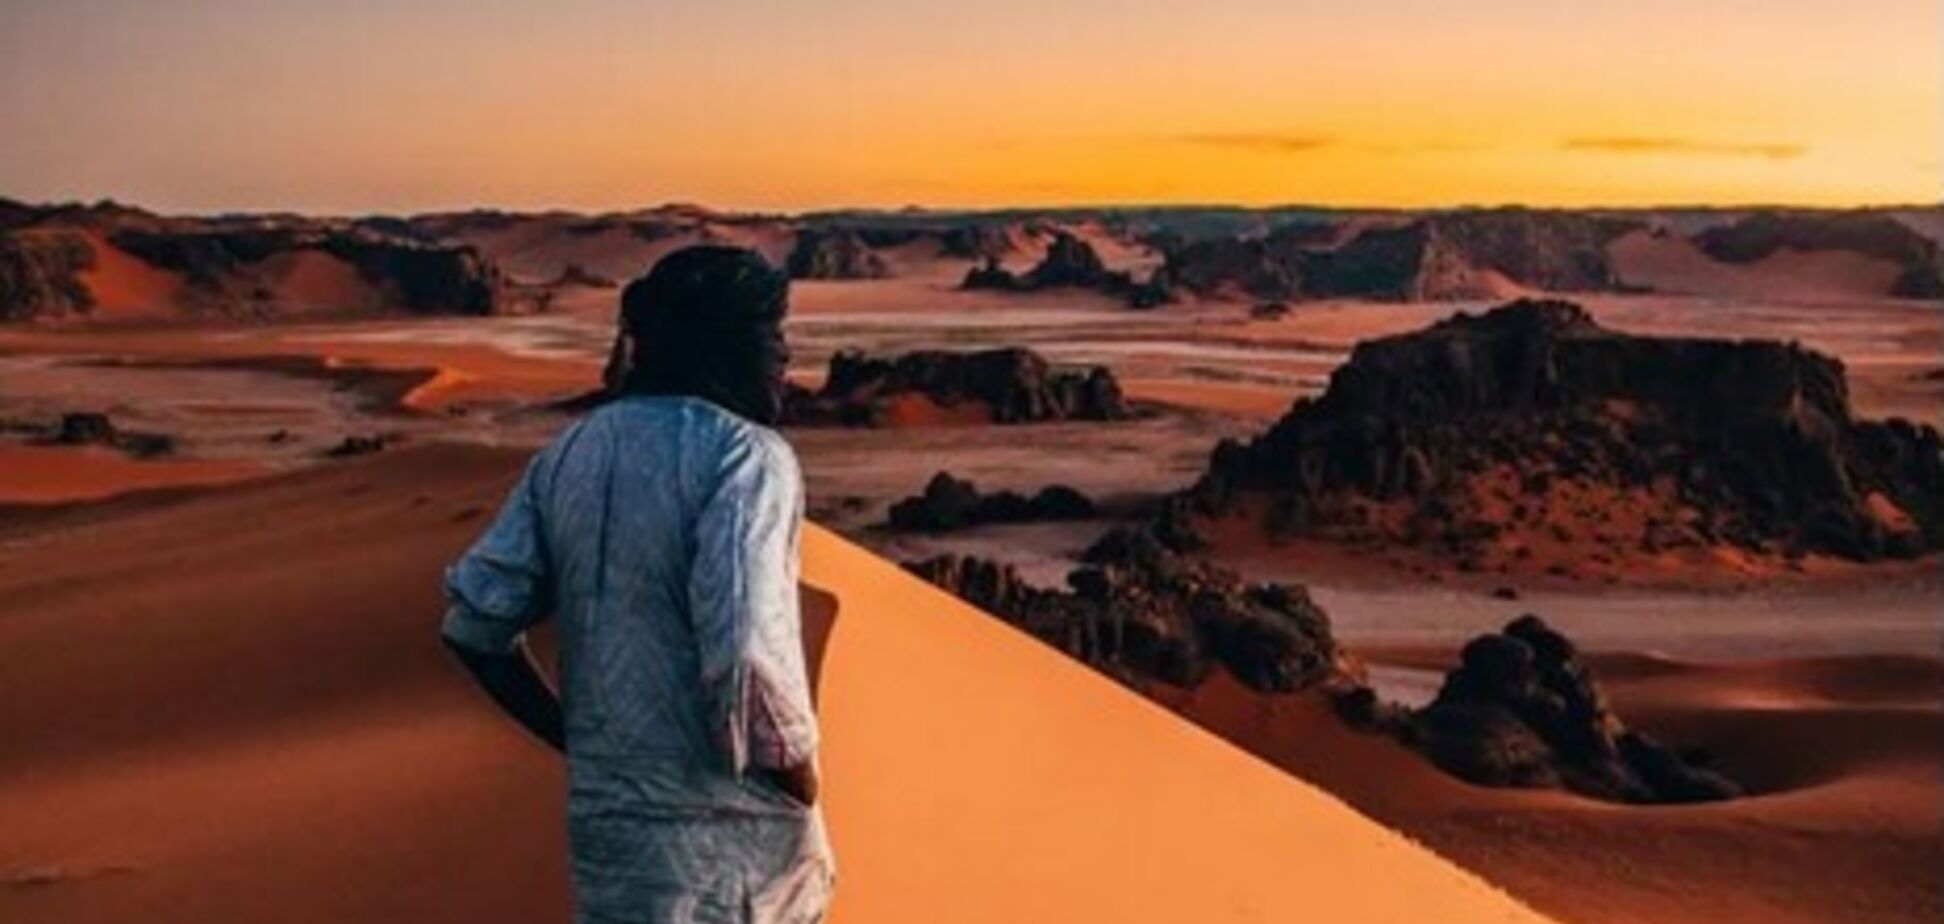 Словно с Марса: парень показал невероятные фото путешествия в пустыню